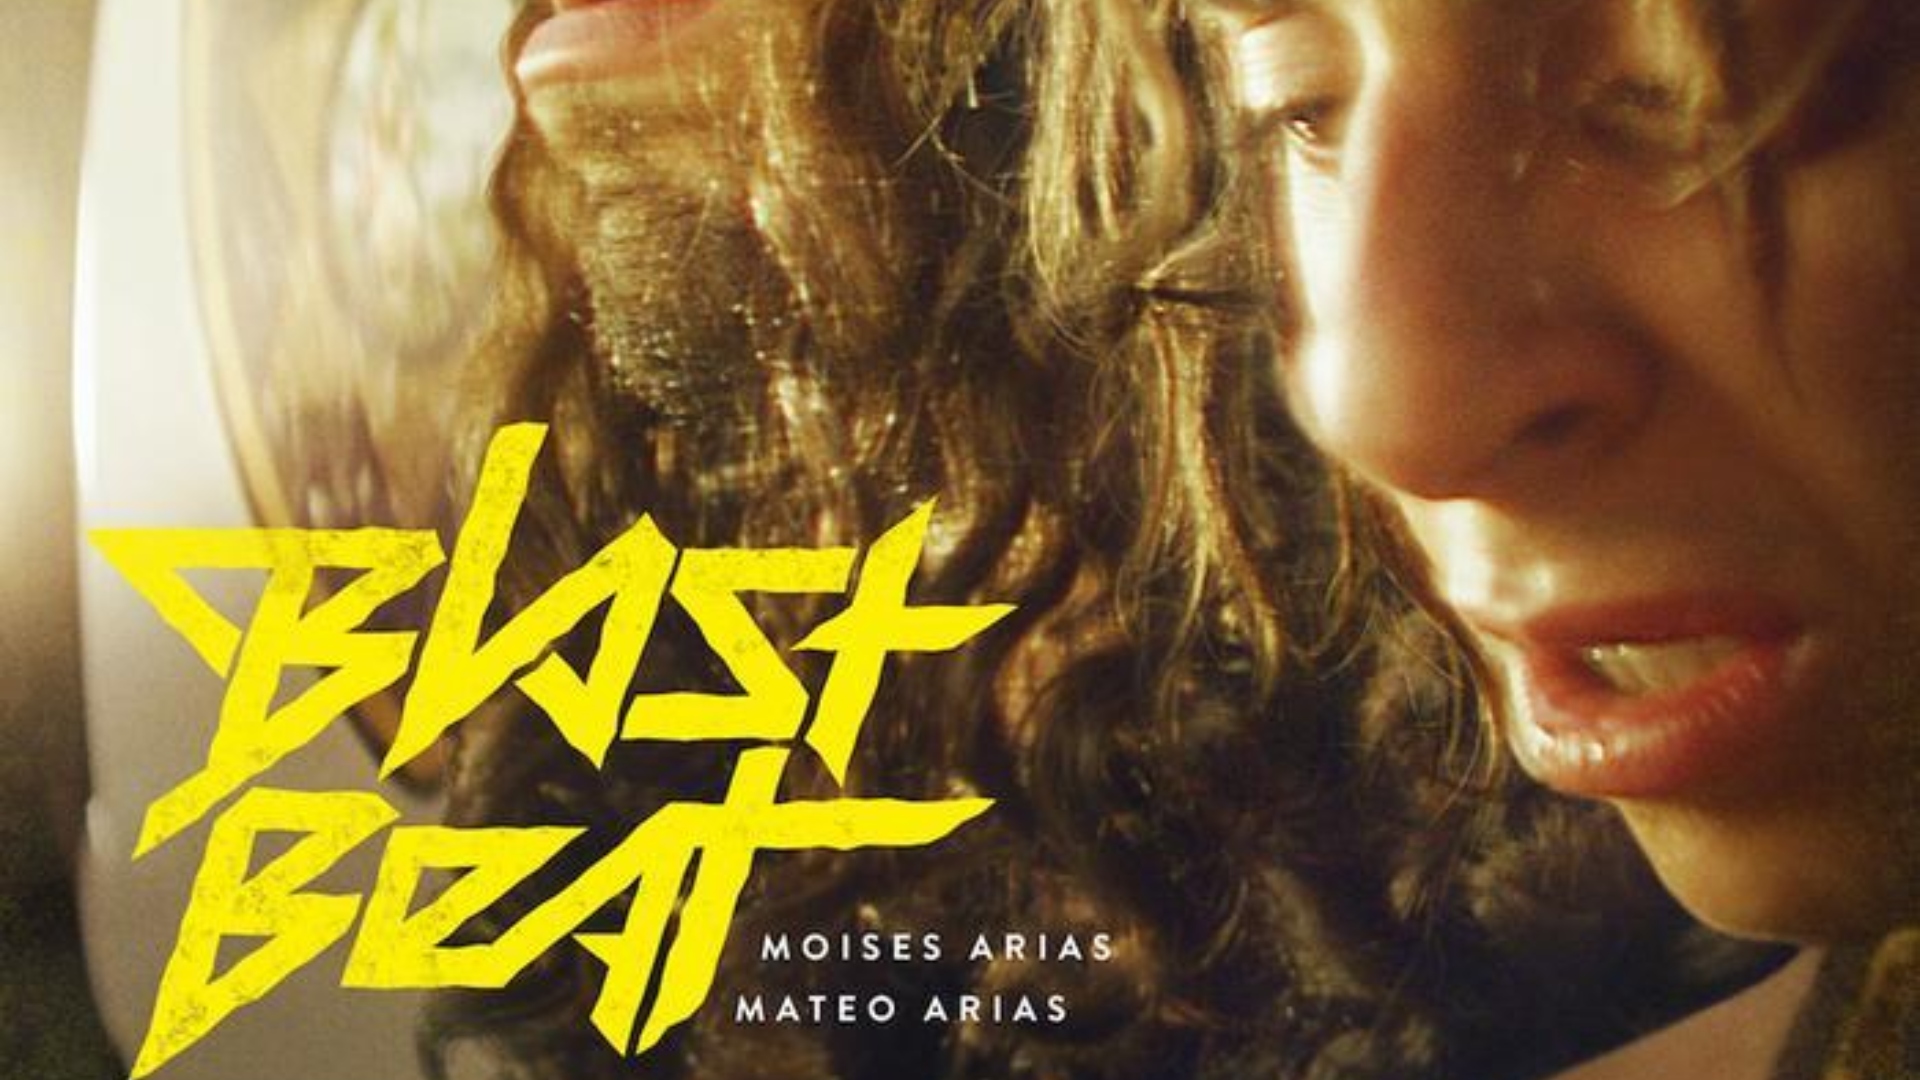 El sueño americano para unos colombianos en «Blast Beat»